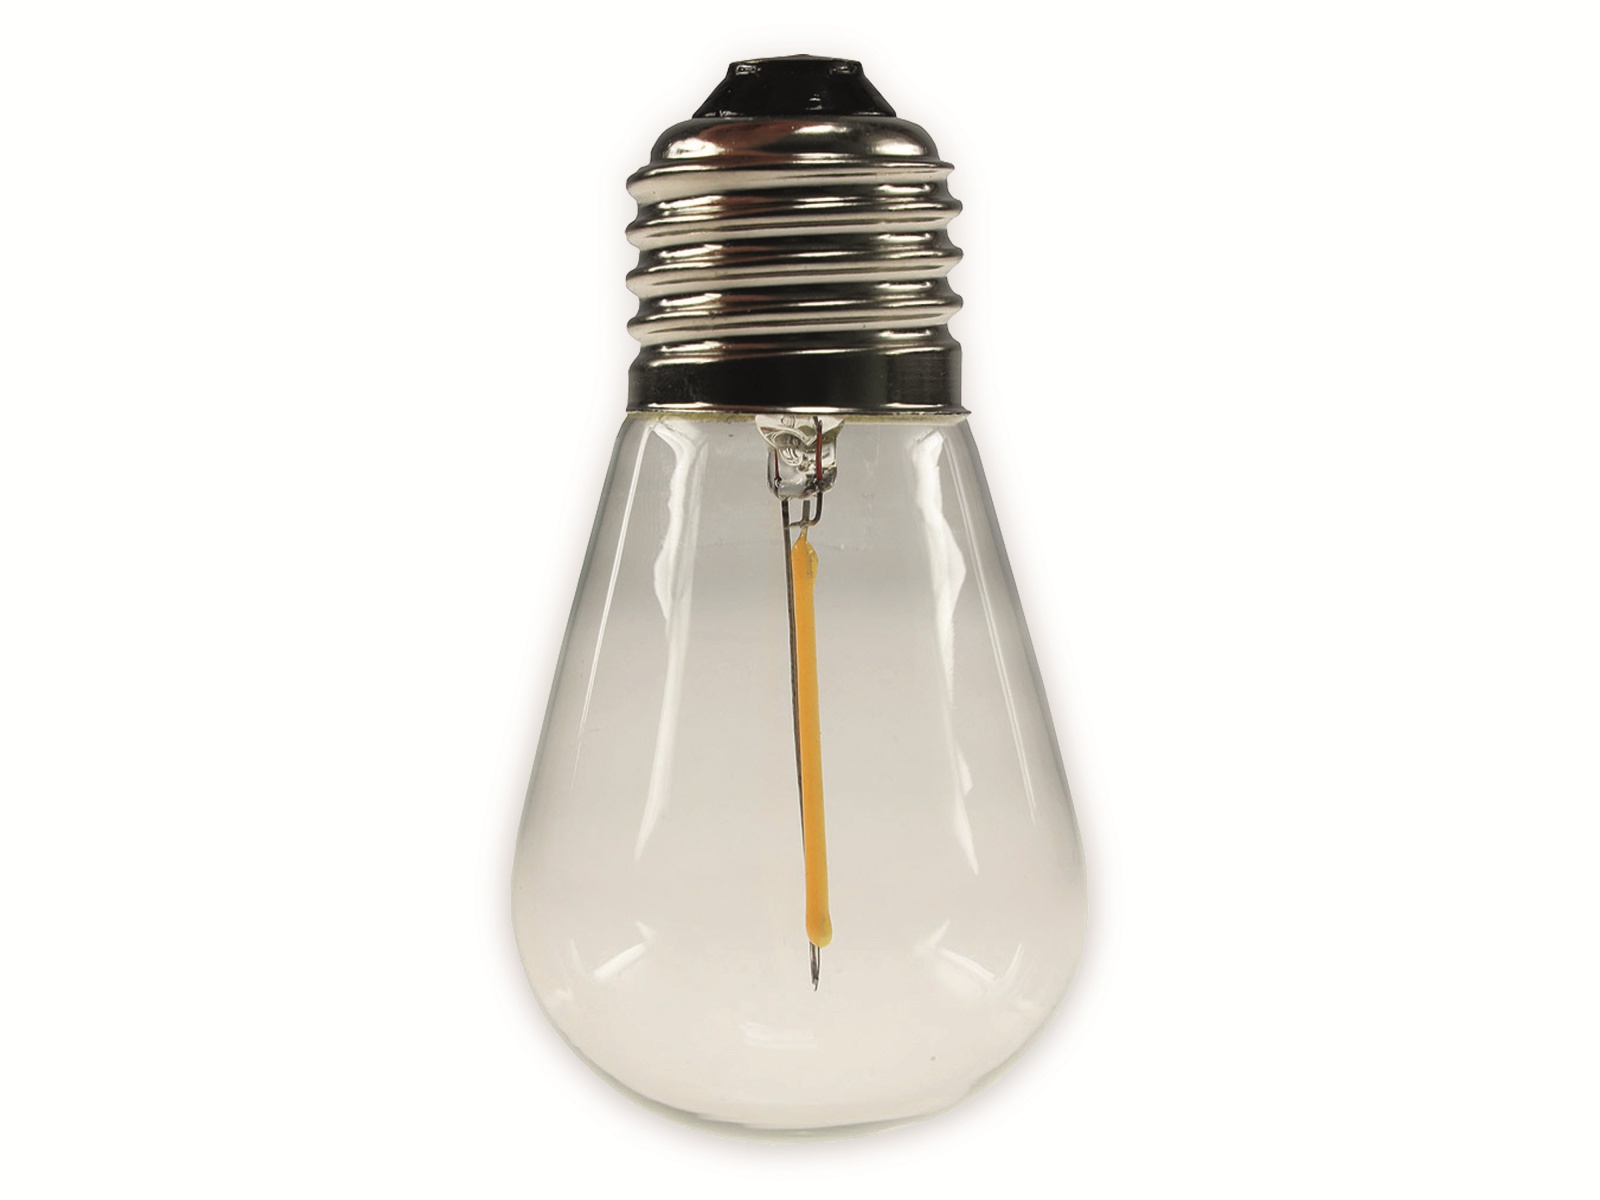 CHILITEC Ersatz Filament-Lampe, E27, 12V, 0,8W